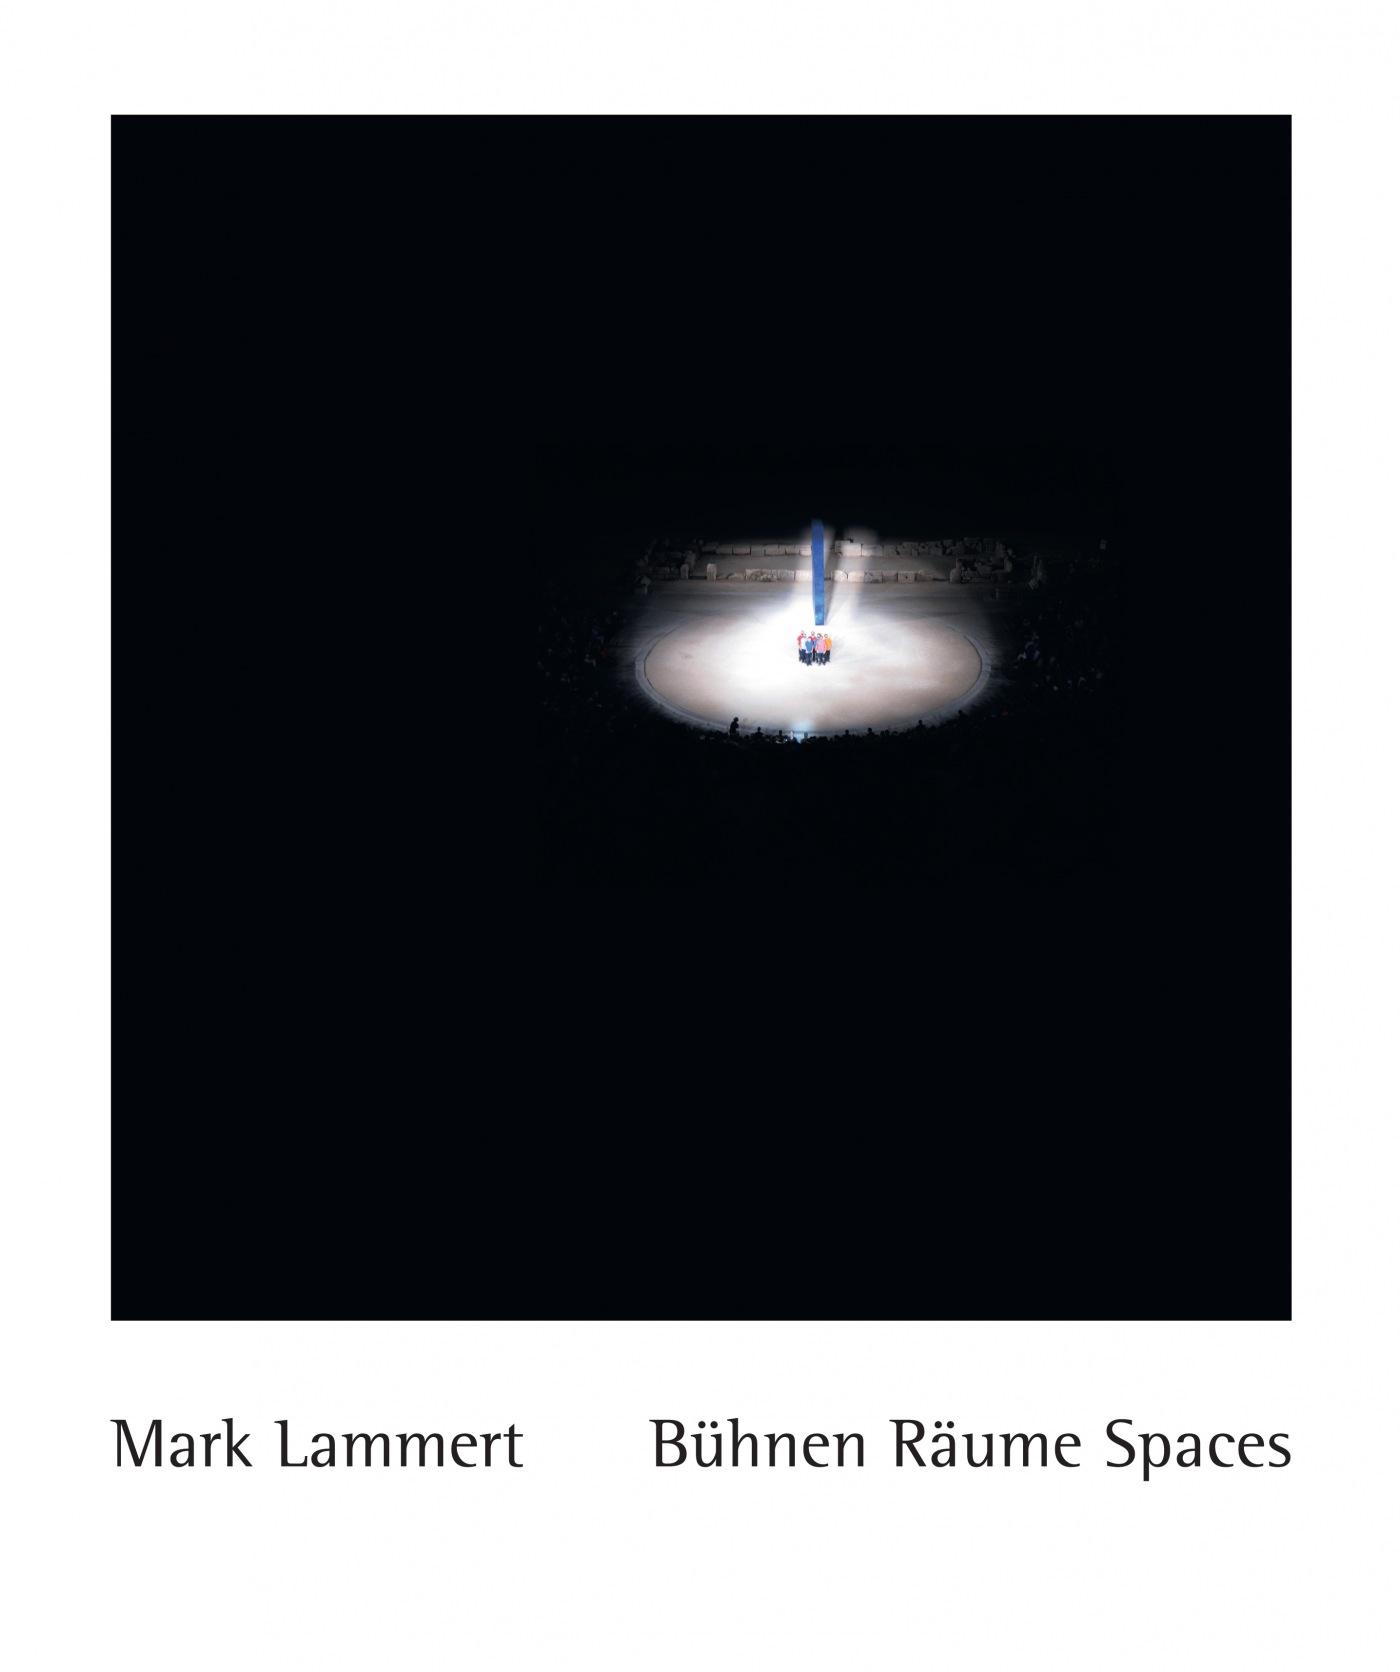 "Mark Lammert"